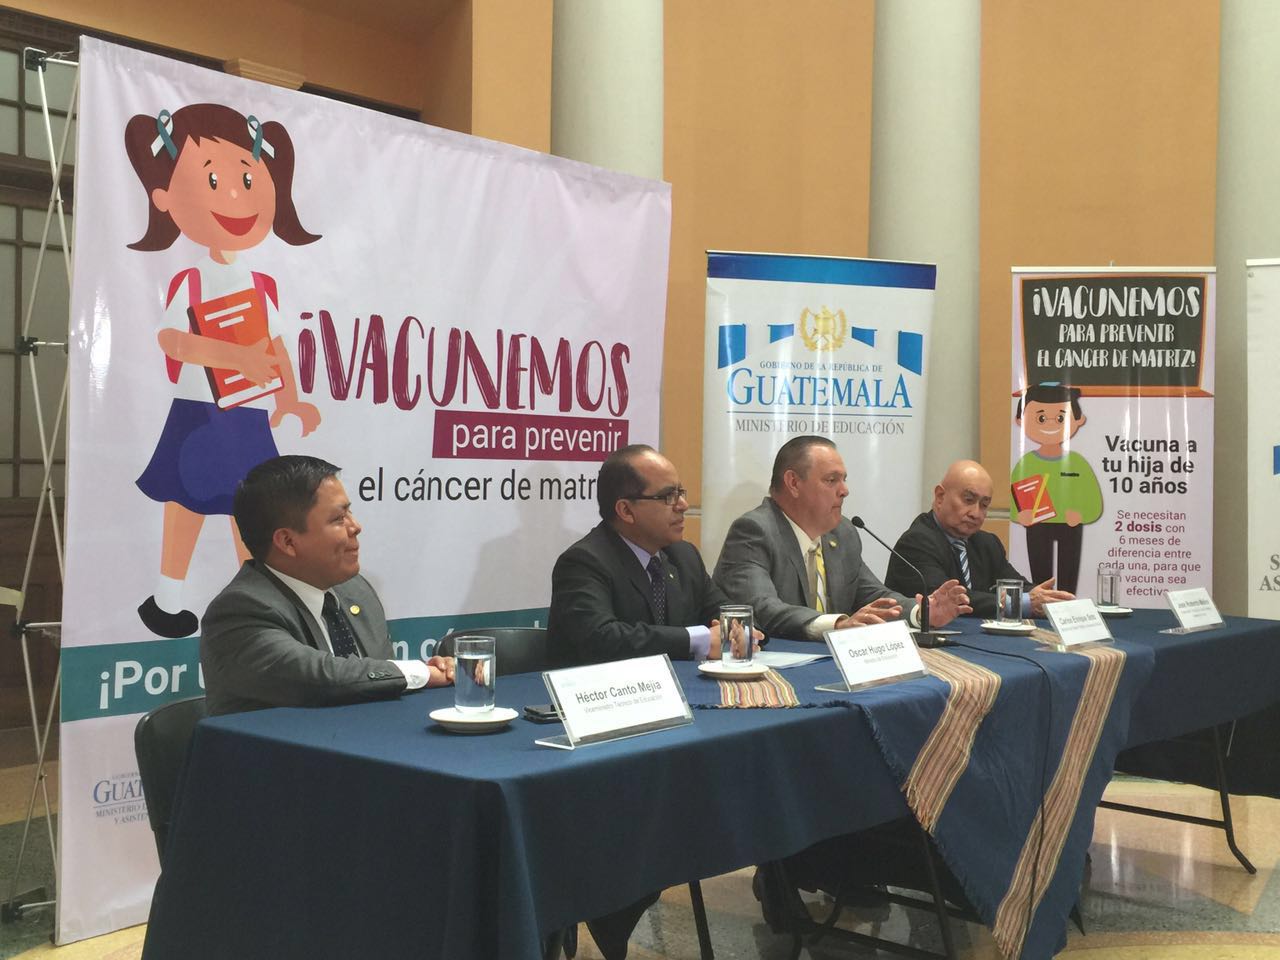 Jornada de vacunación EU Emisoras Unidas Guatemala